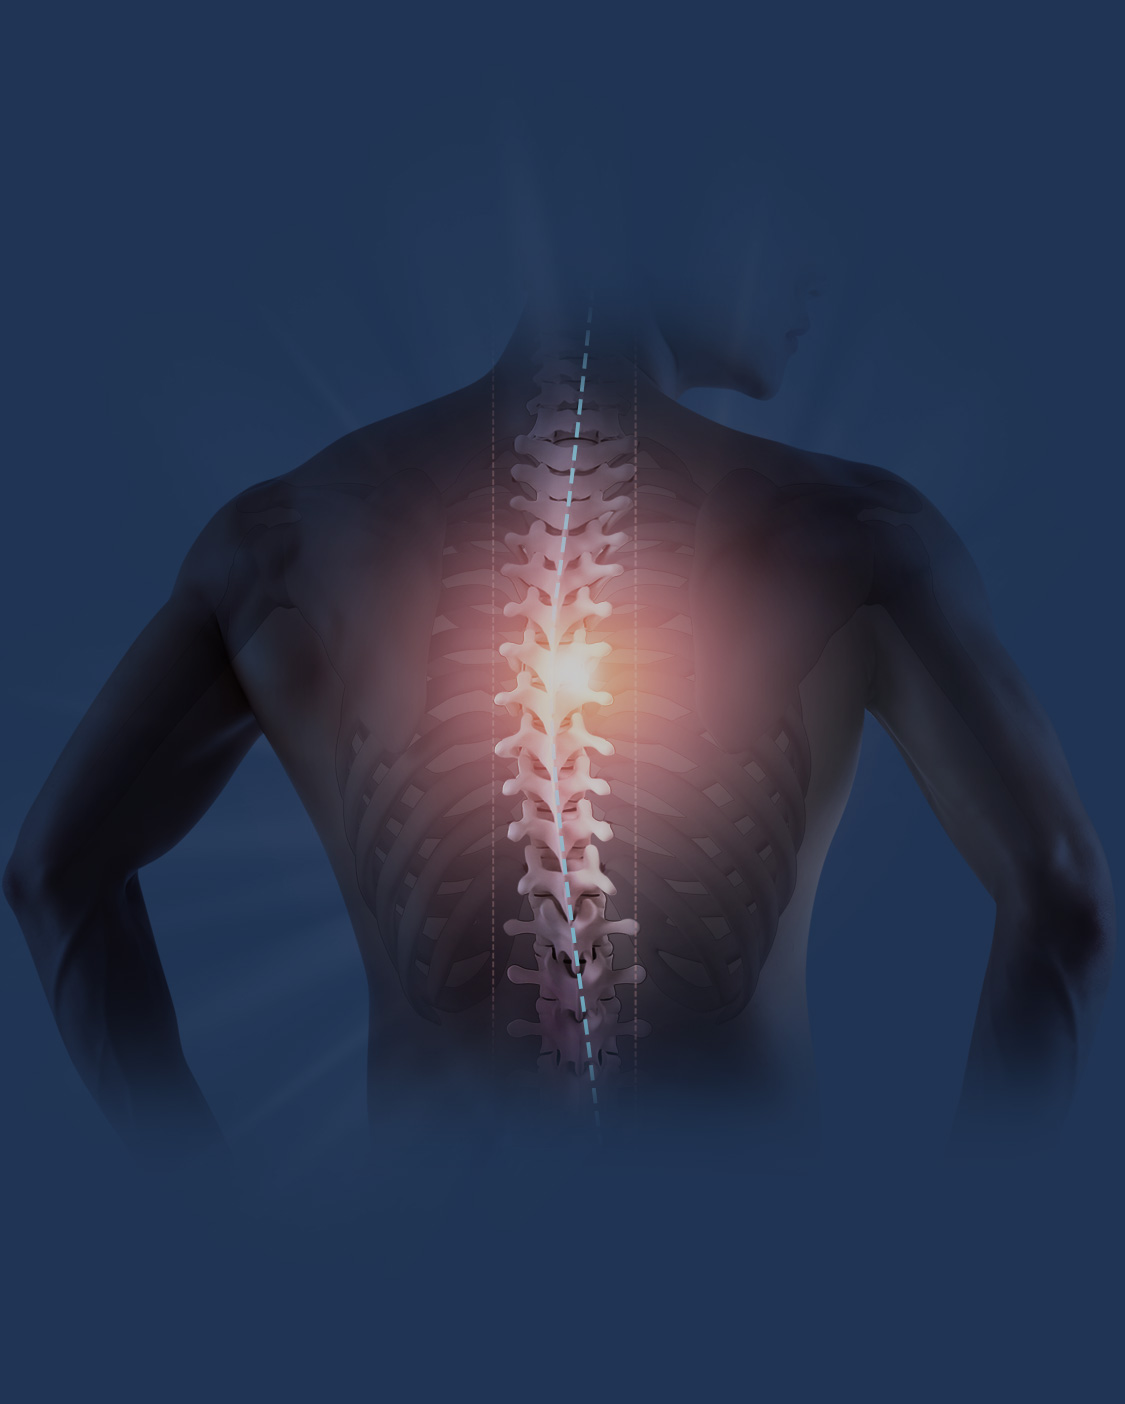 척추뼈와 관절, 자세를 교정하여 통증을 완화하는 치료법입니다.